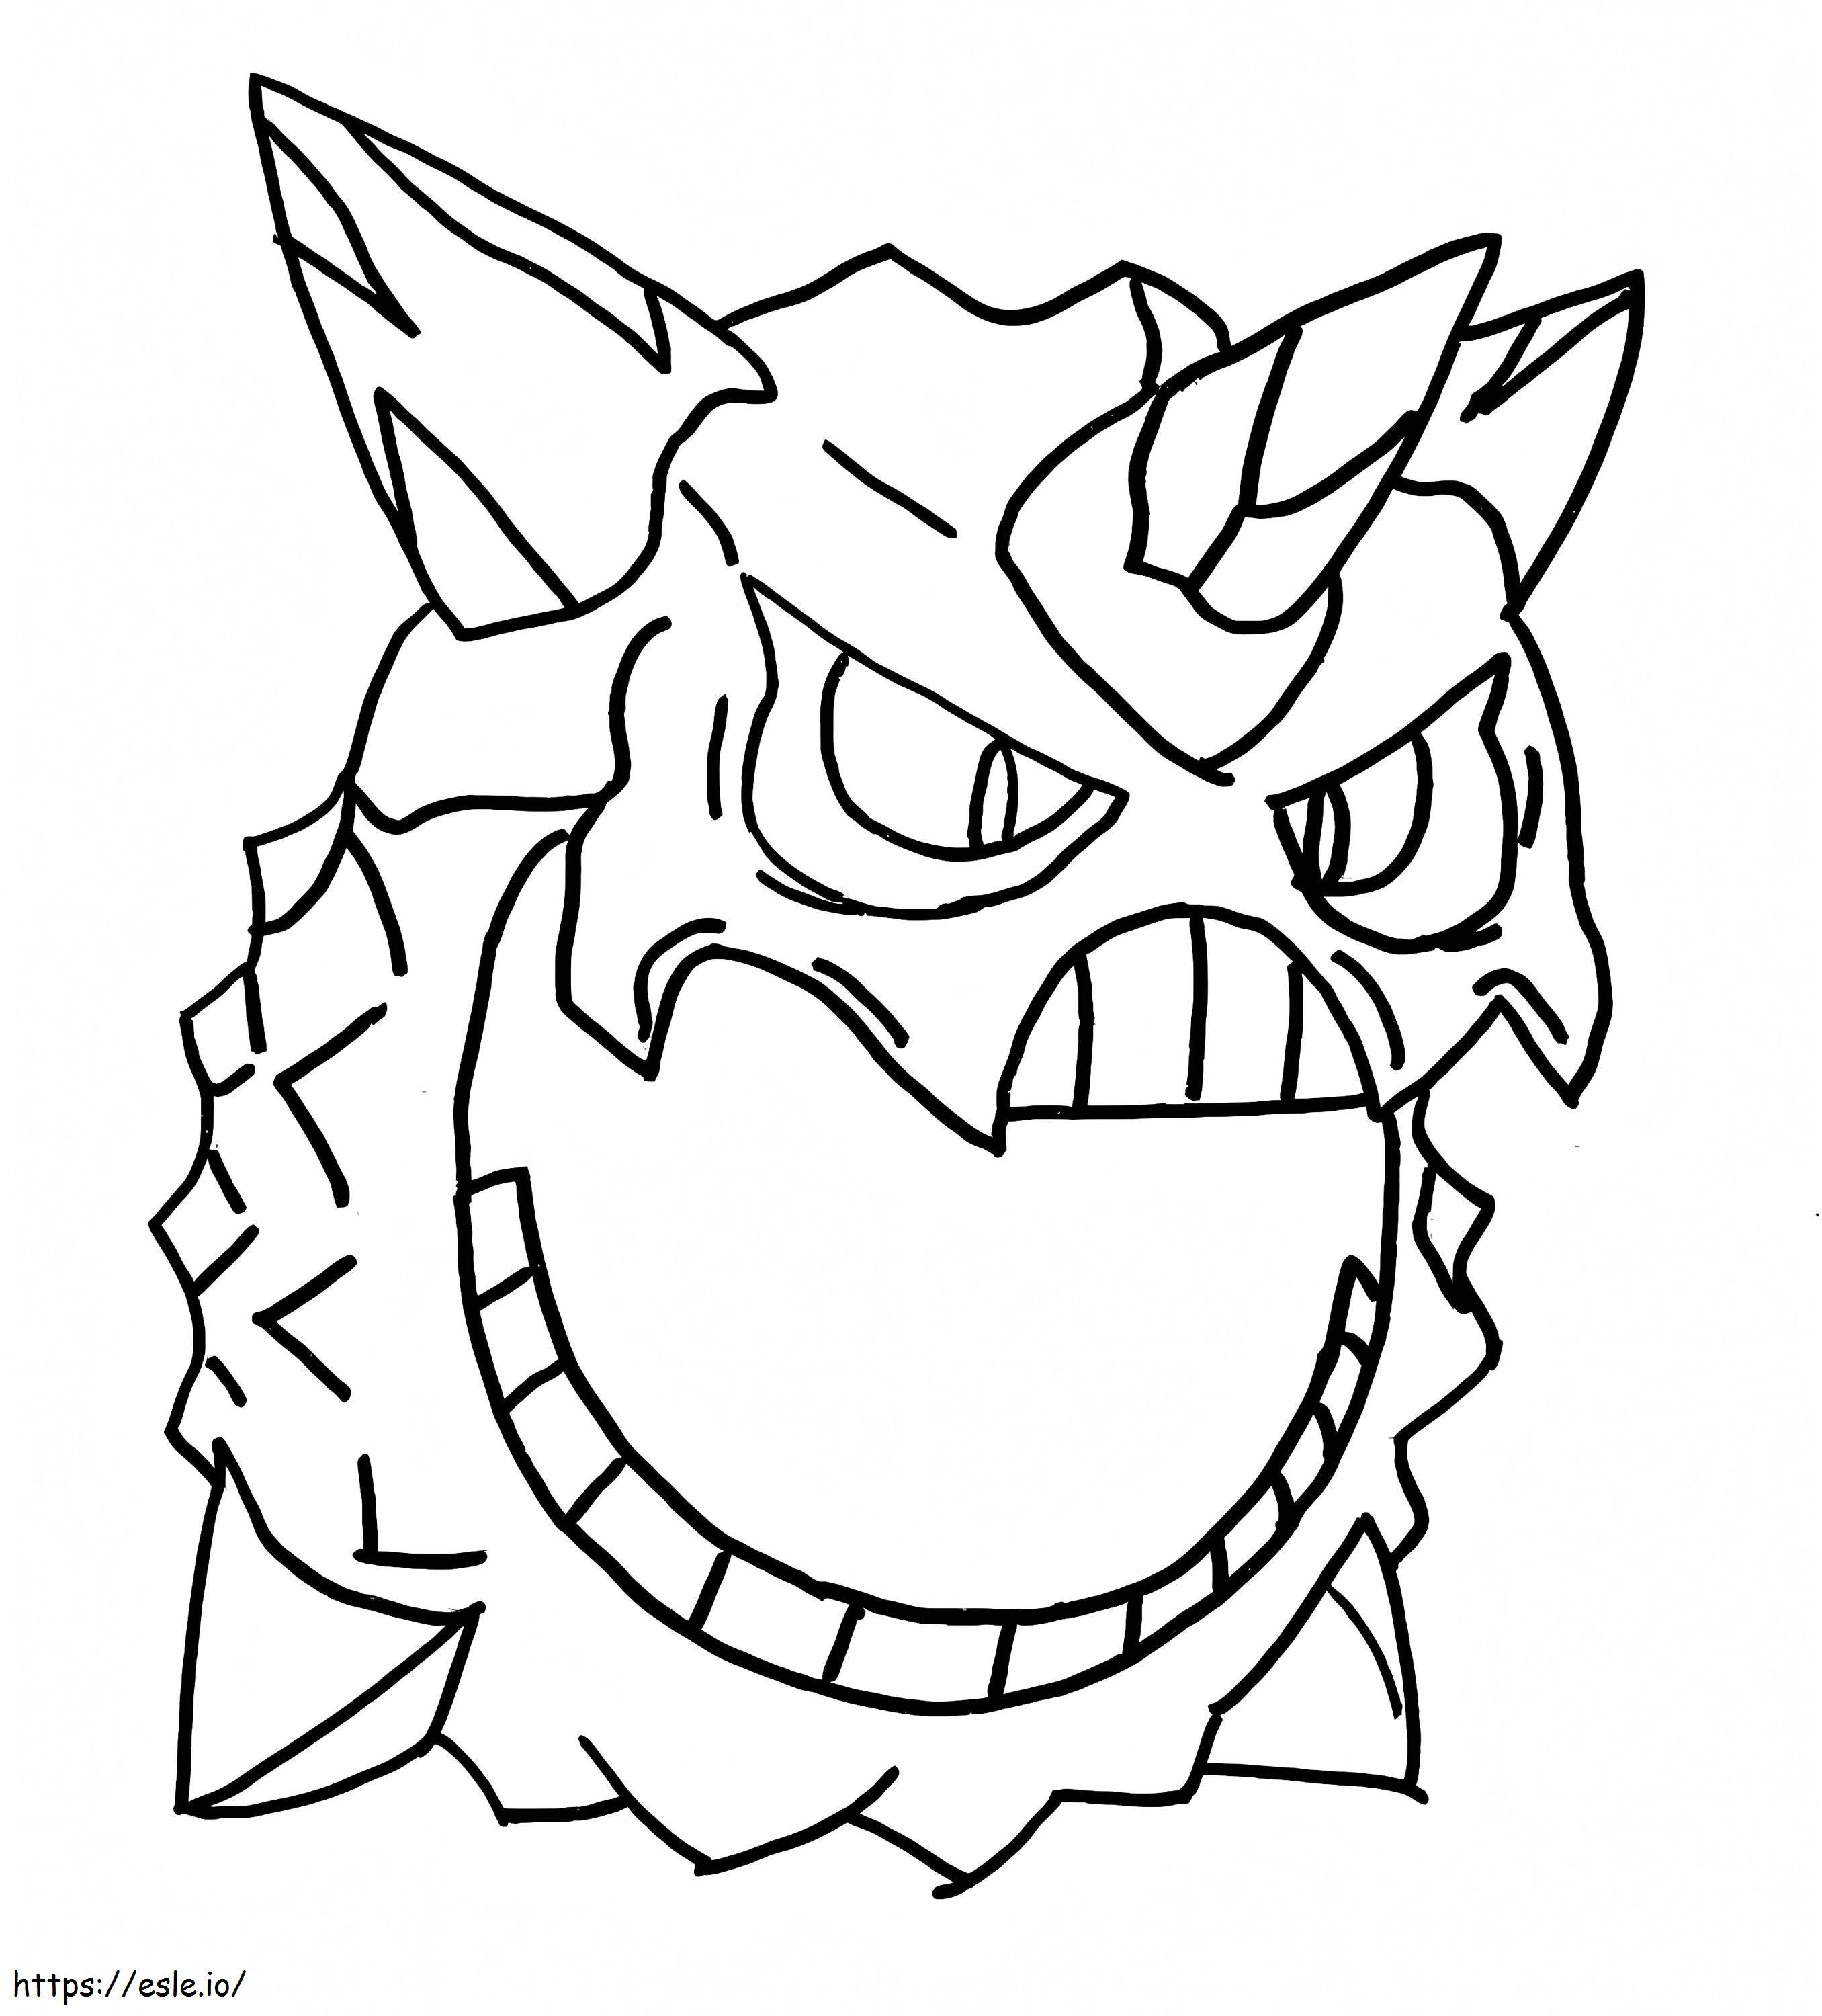 Coloriage Pokémon Méga Glalie à imprimer dessin